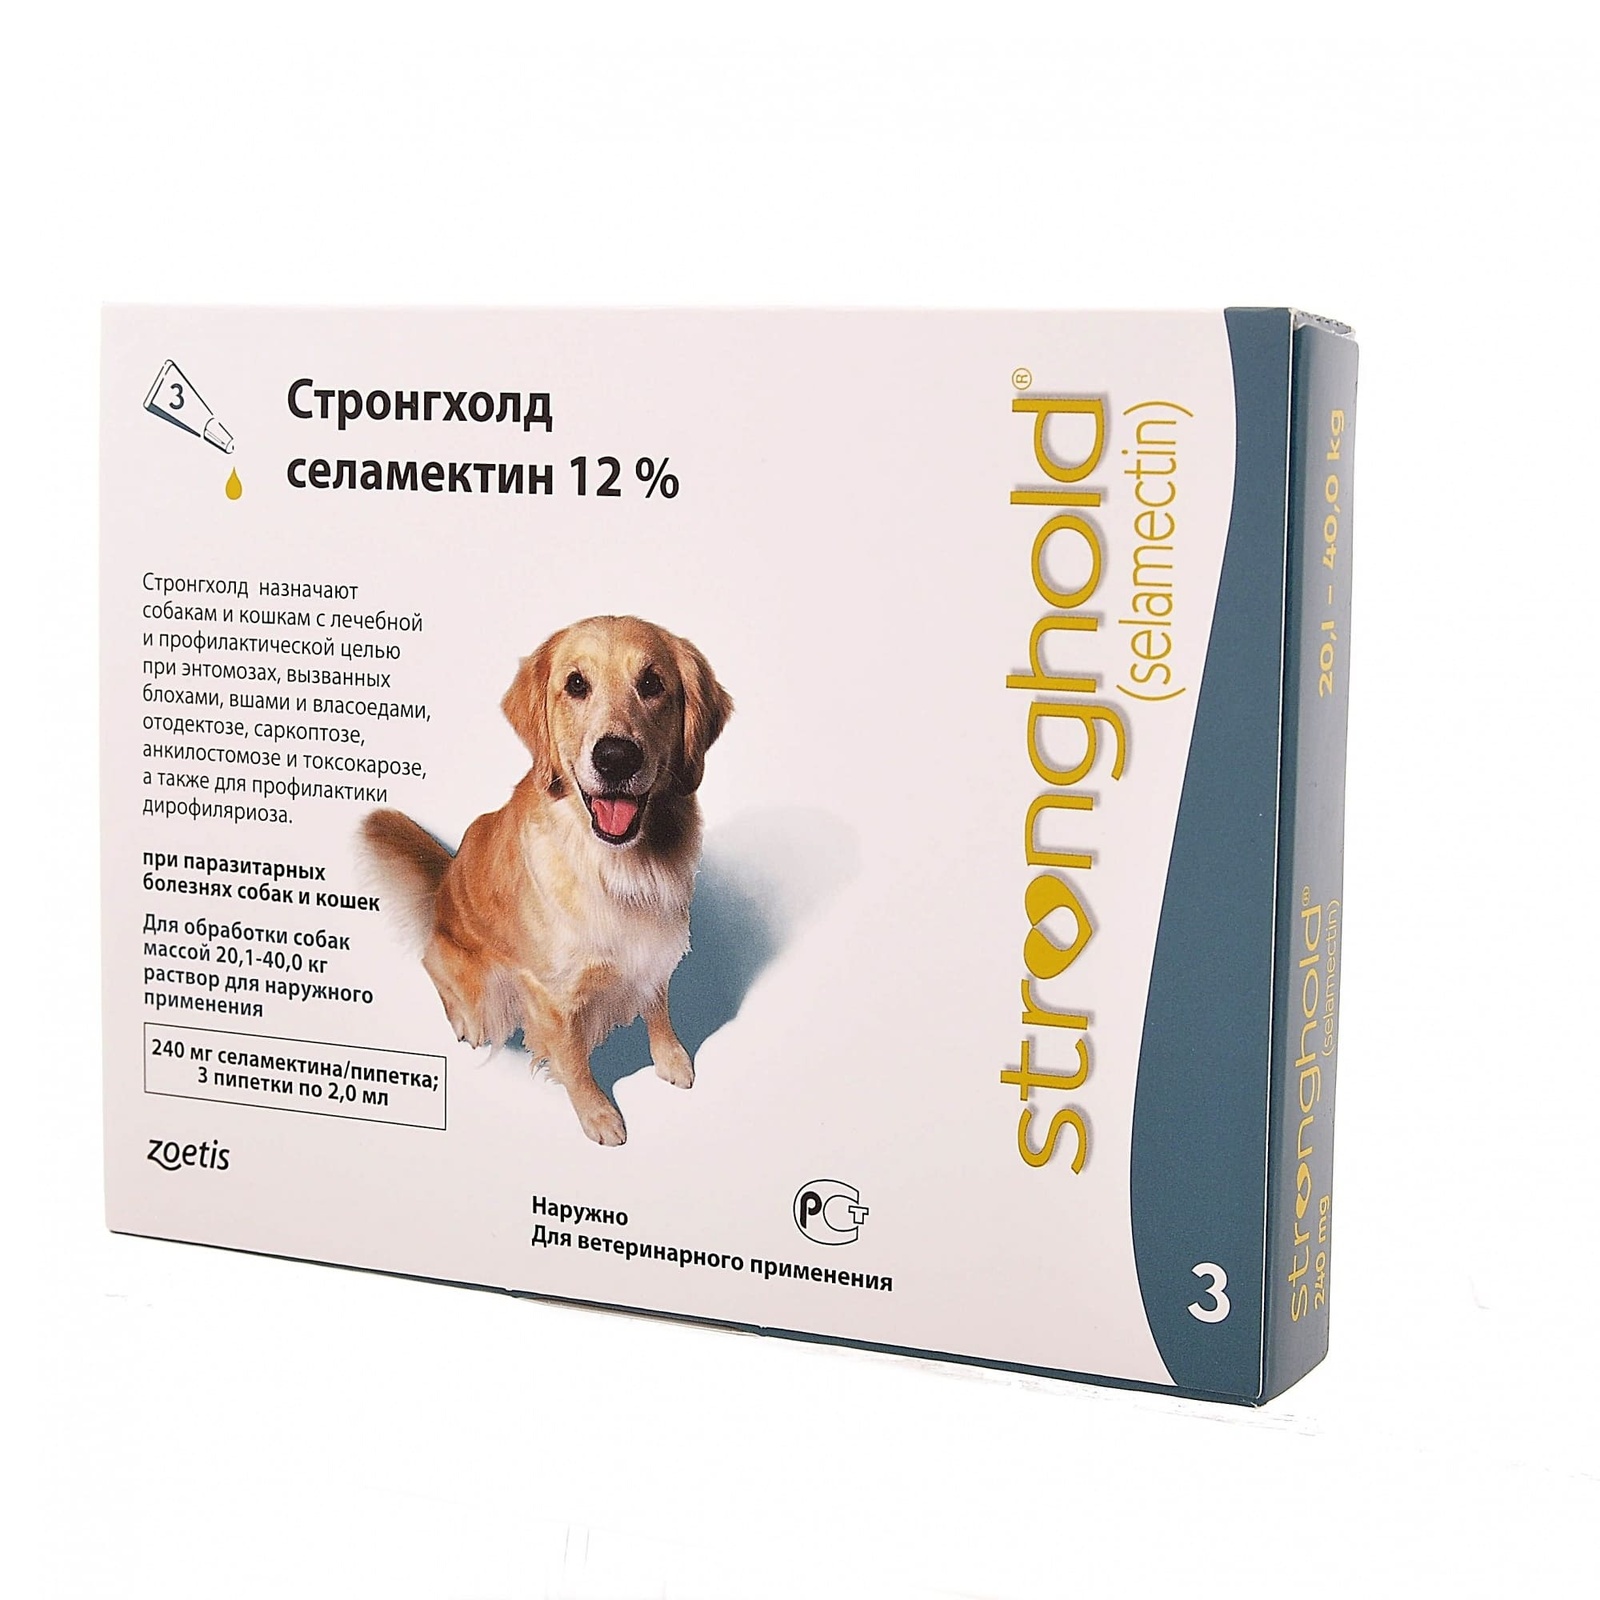 Zoetis стронгхолд, капли от наружных и внутренних паразитов для собак 20,1-40,0 кг, 3 пип/уп (10 г)